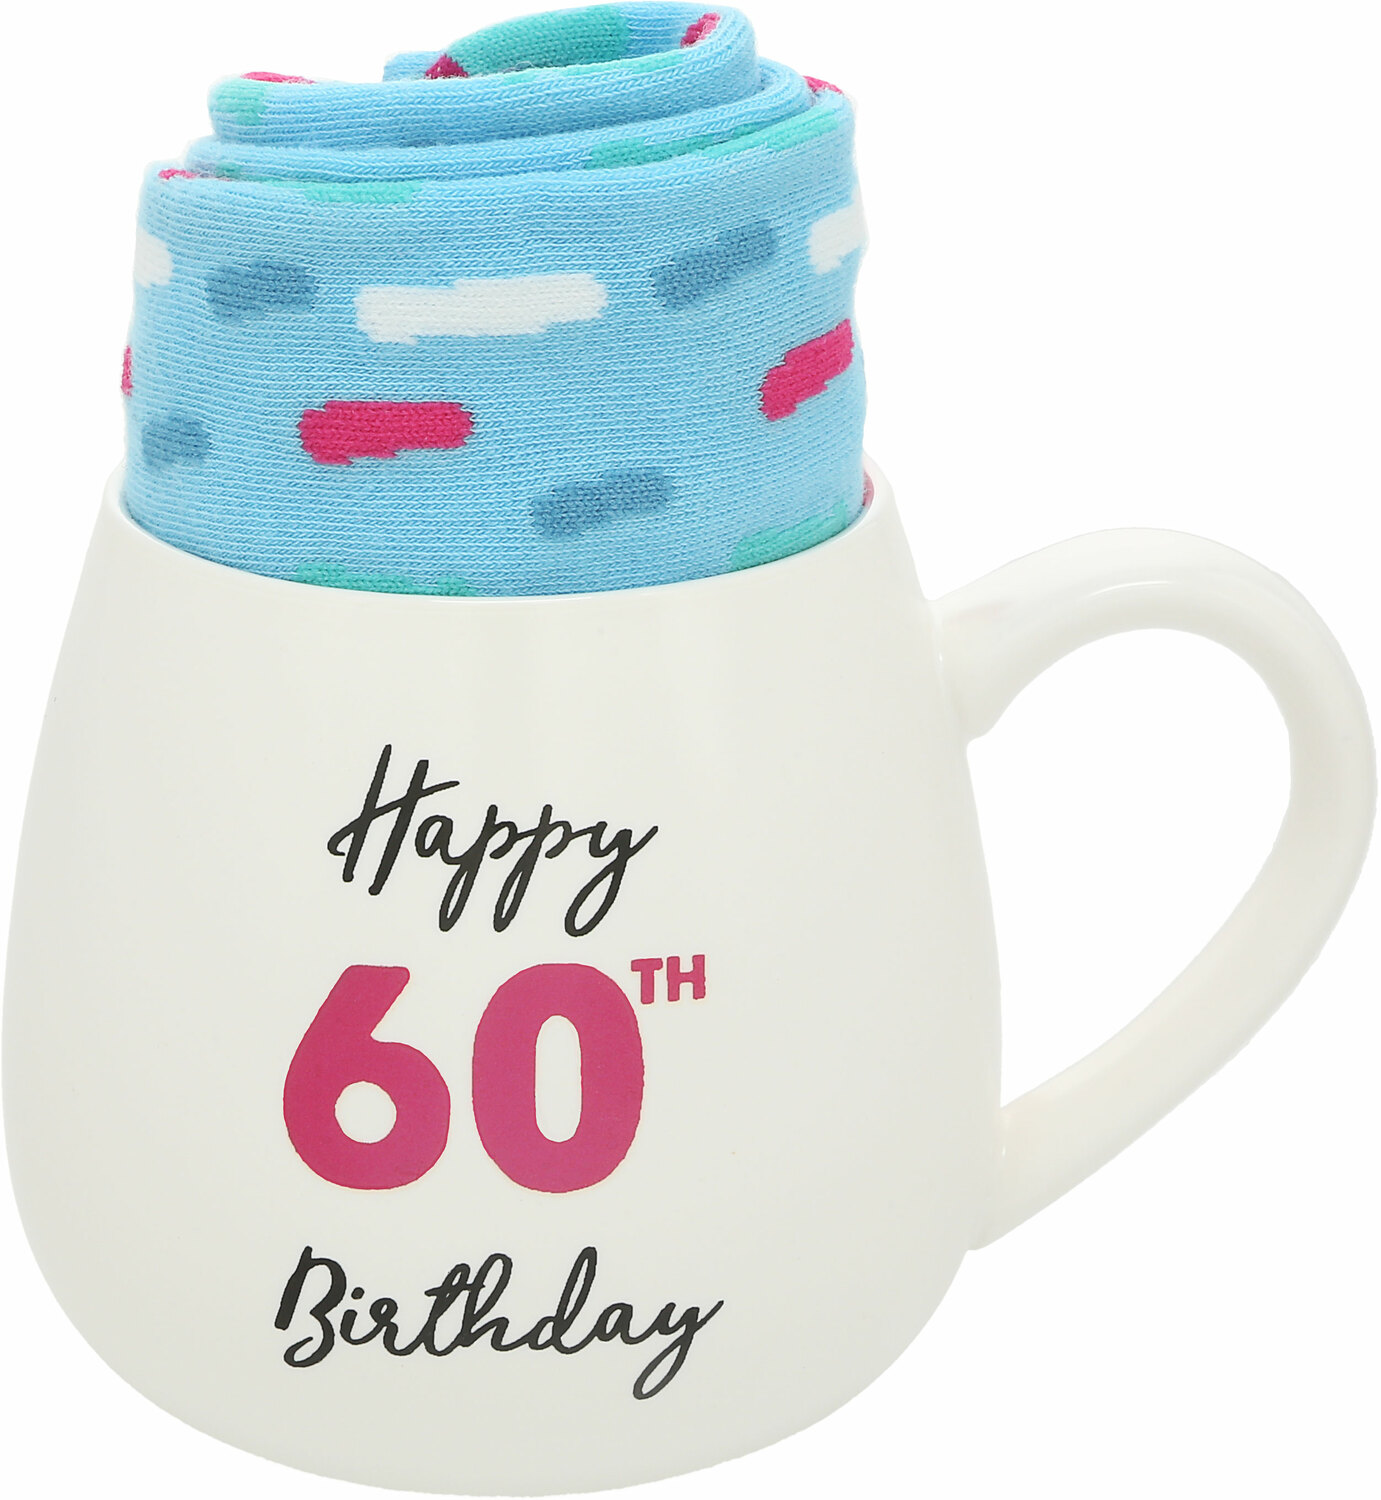 60th Birthday by Warm & Toe-sty - 60th Birthday - 15.5 oz Mug and Sock Set